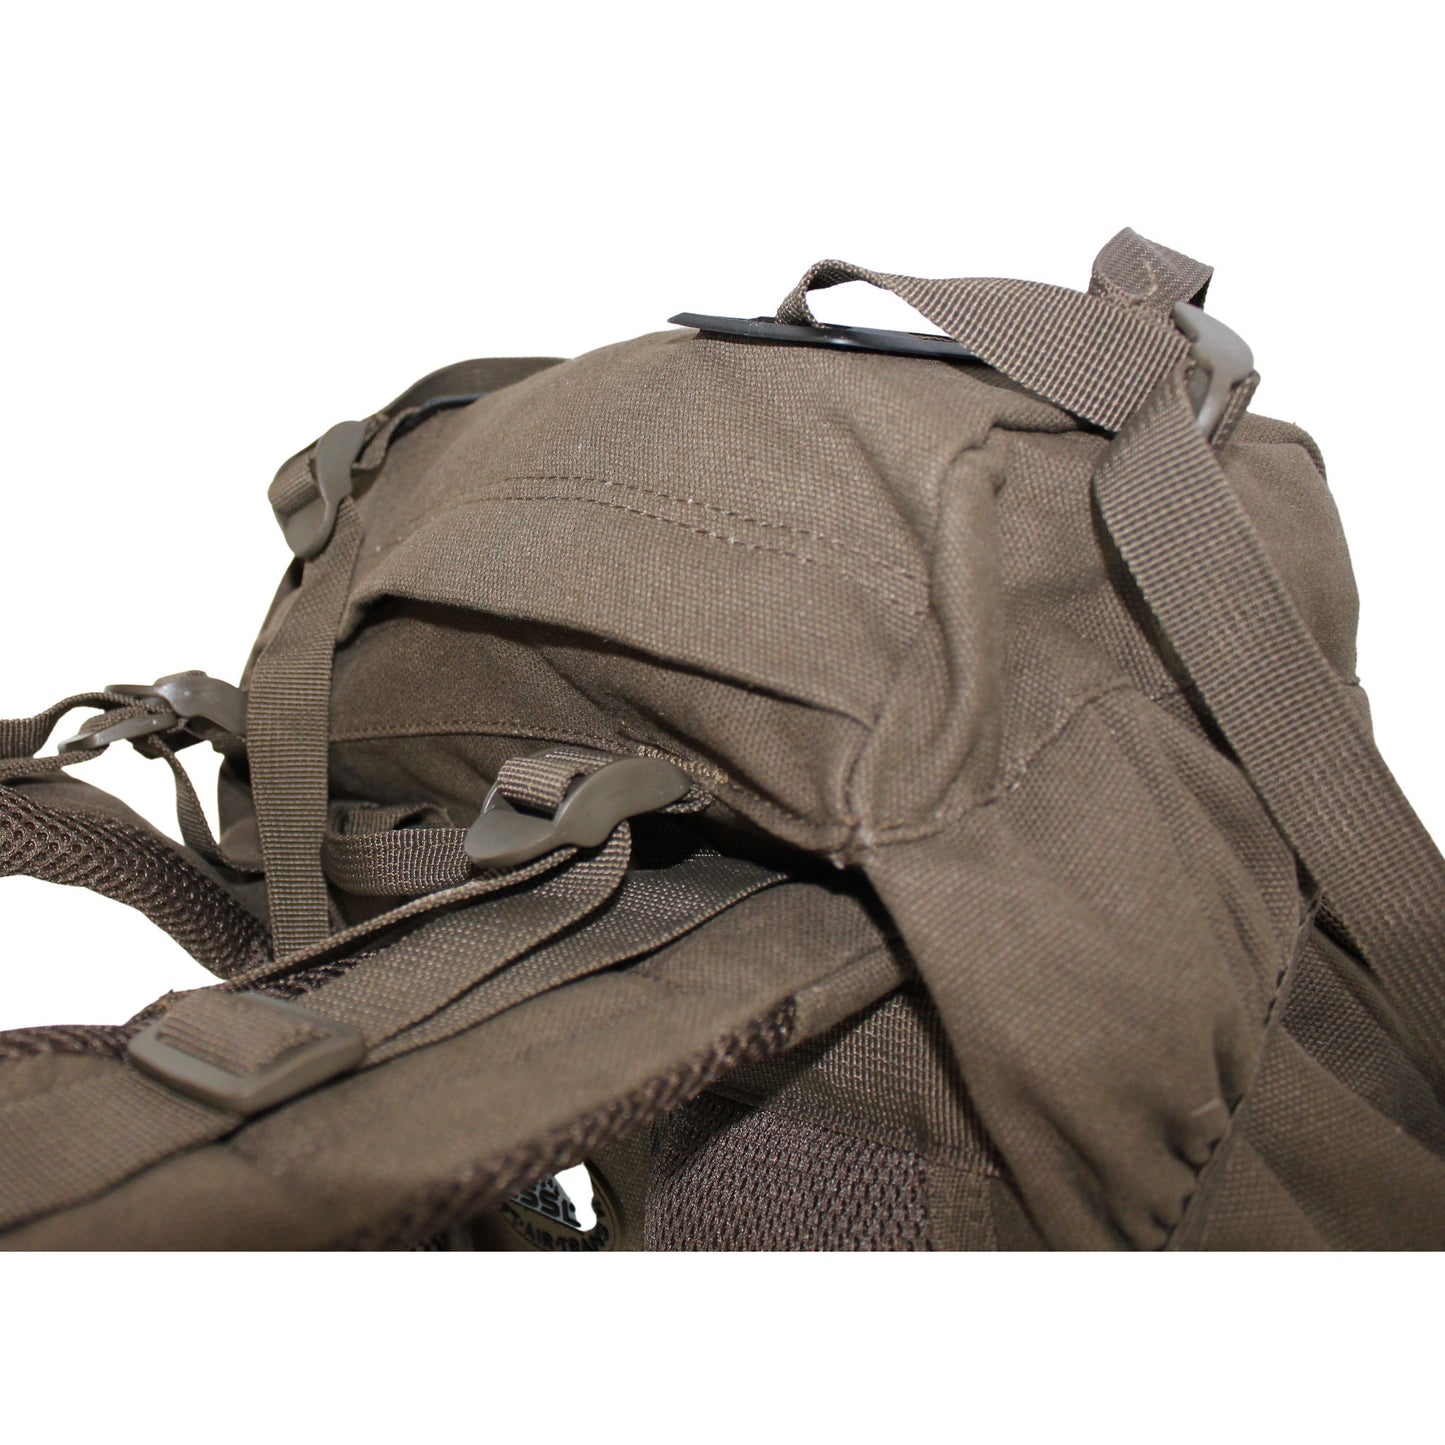 RU5026 cadring backpack Large 40 l olive